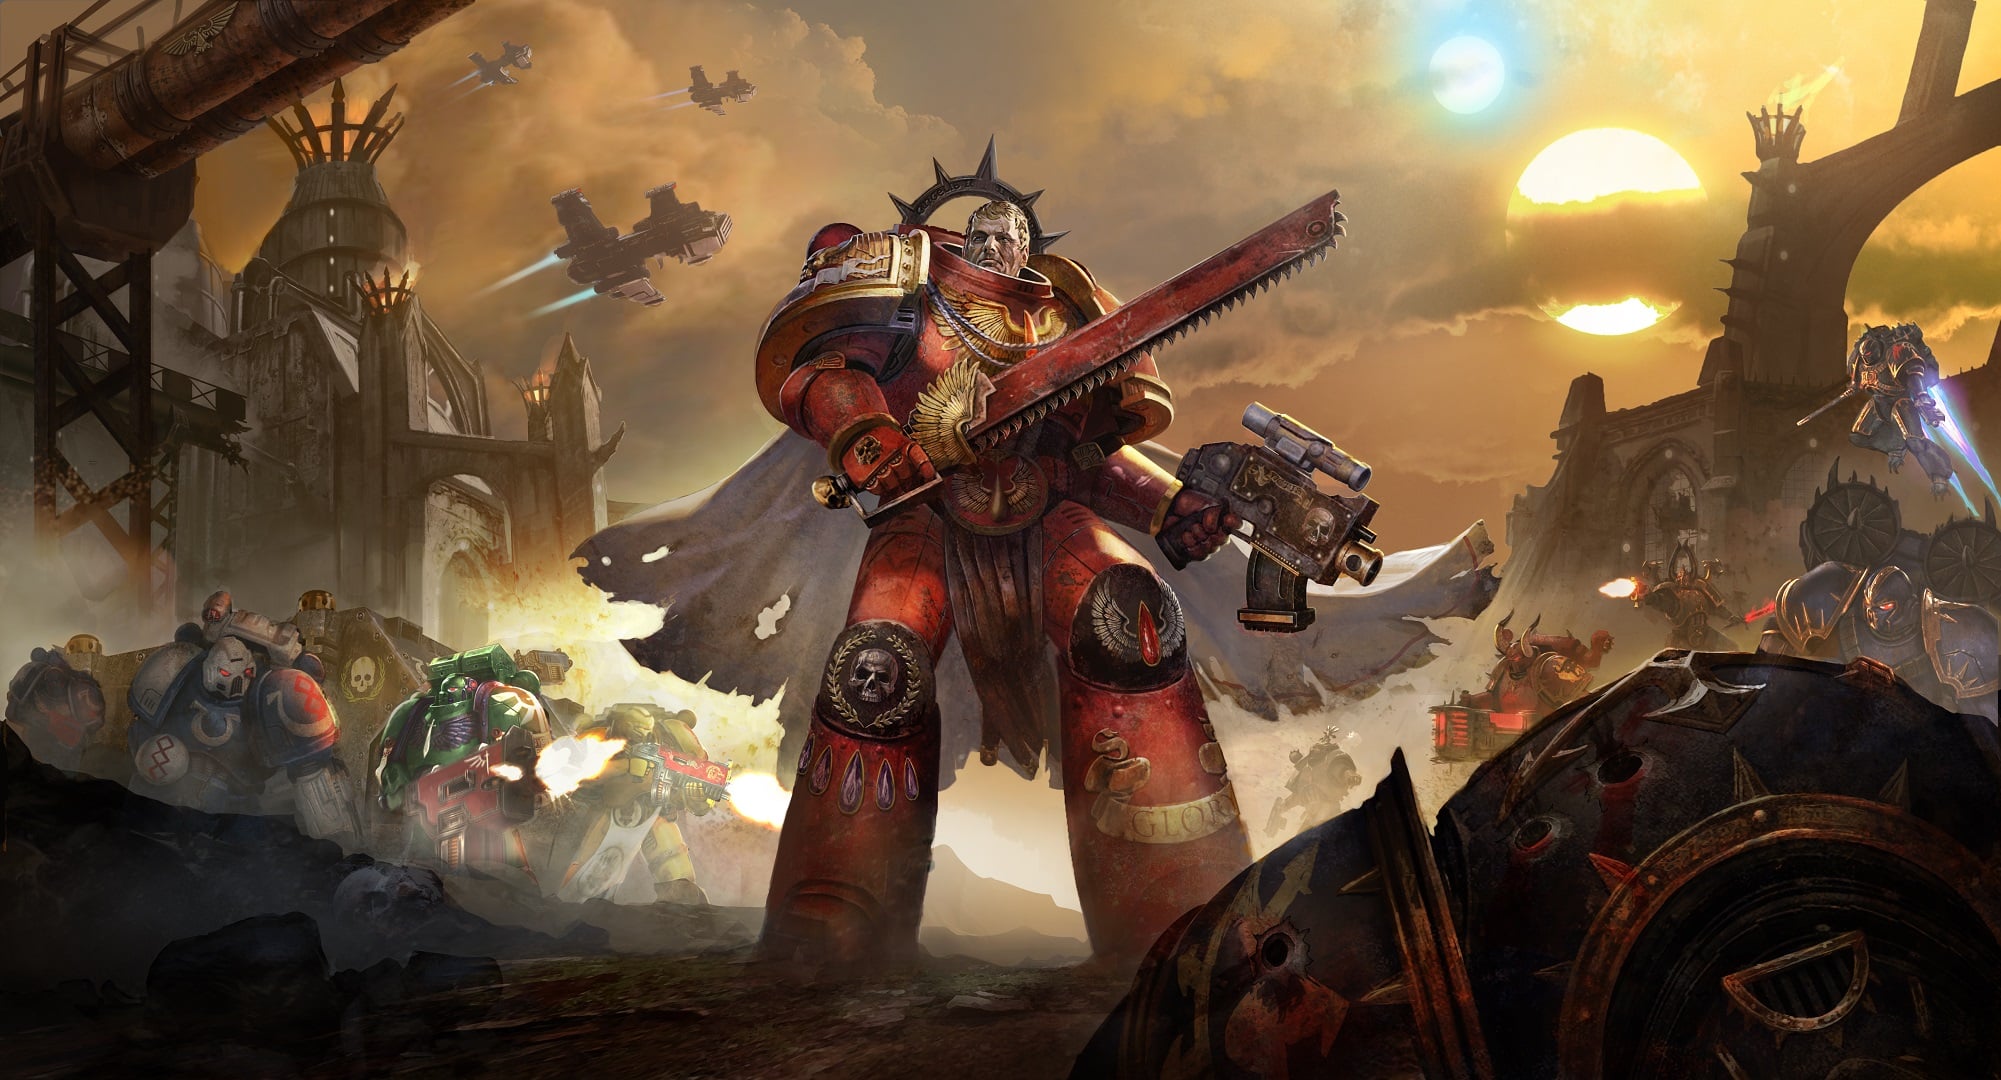 Warhammer 40000: Eternal Crusade